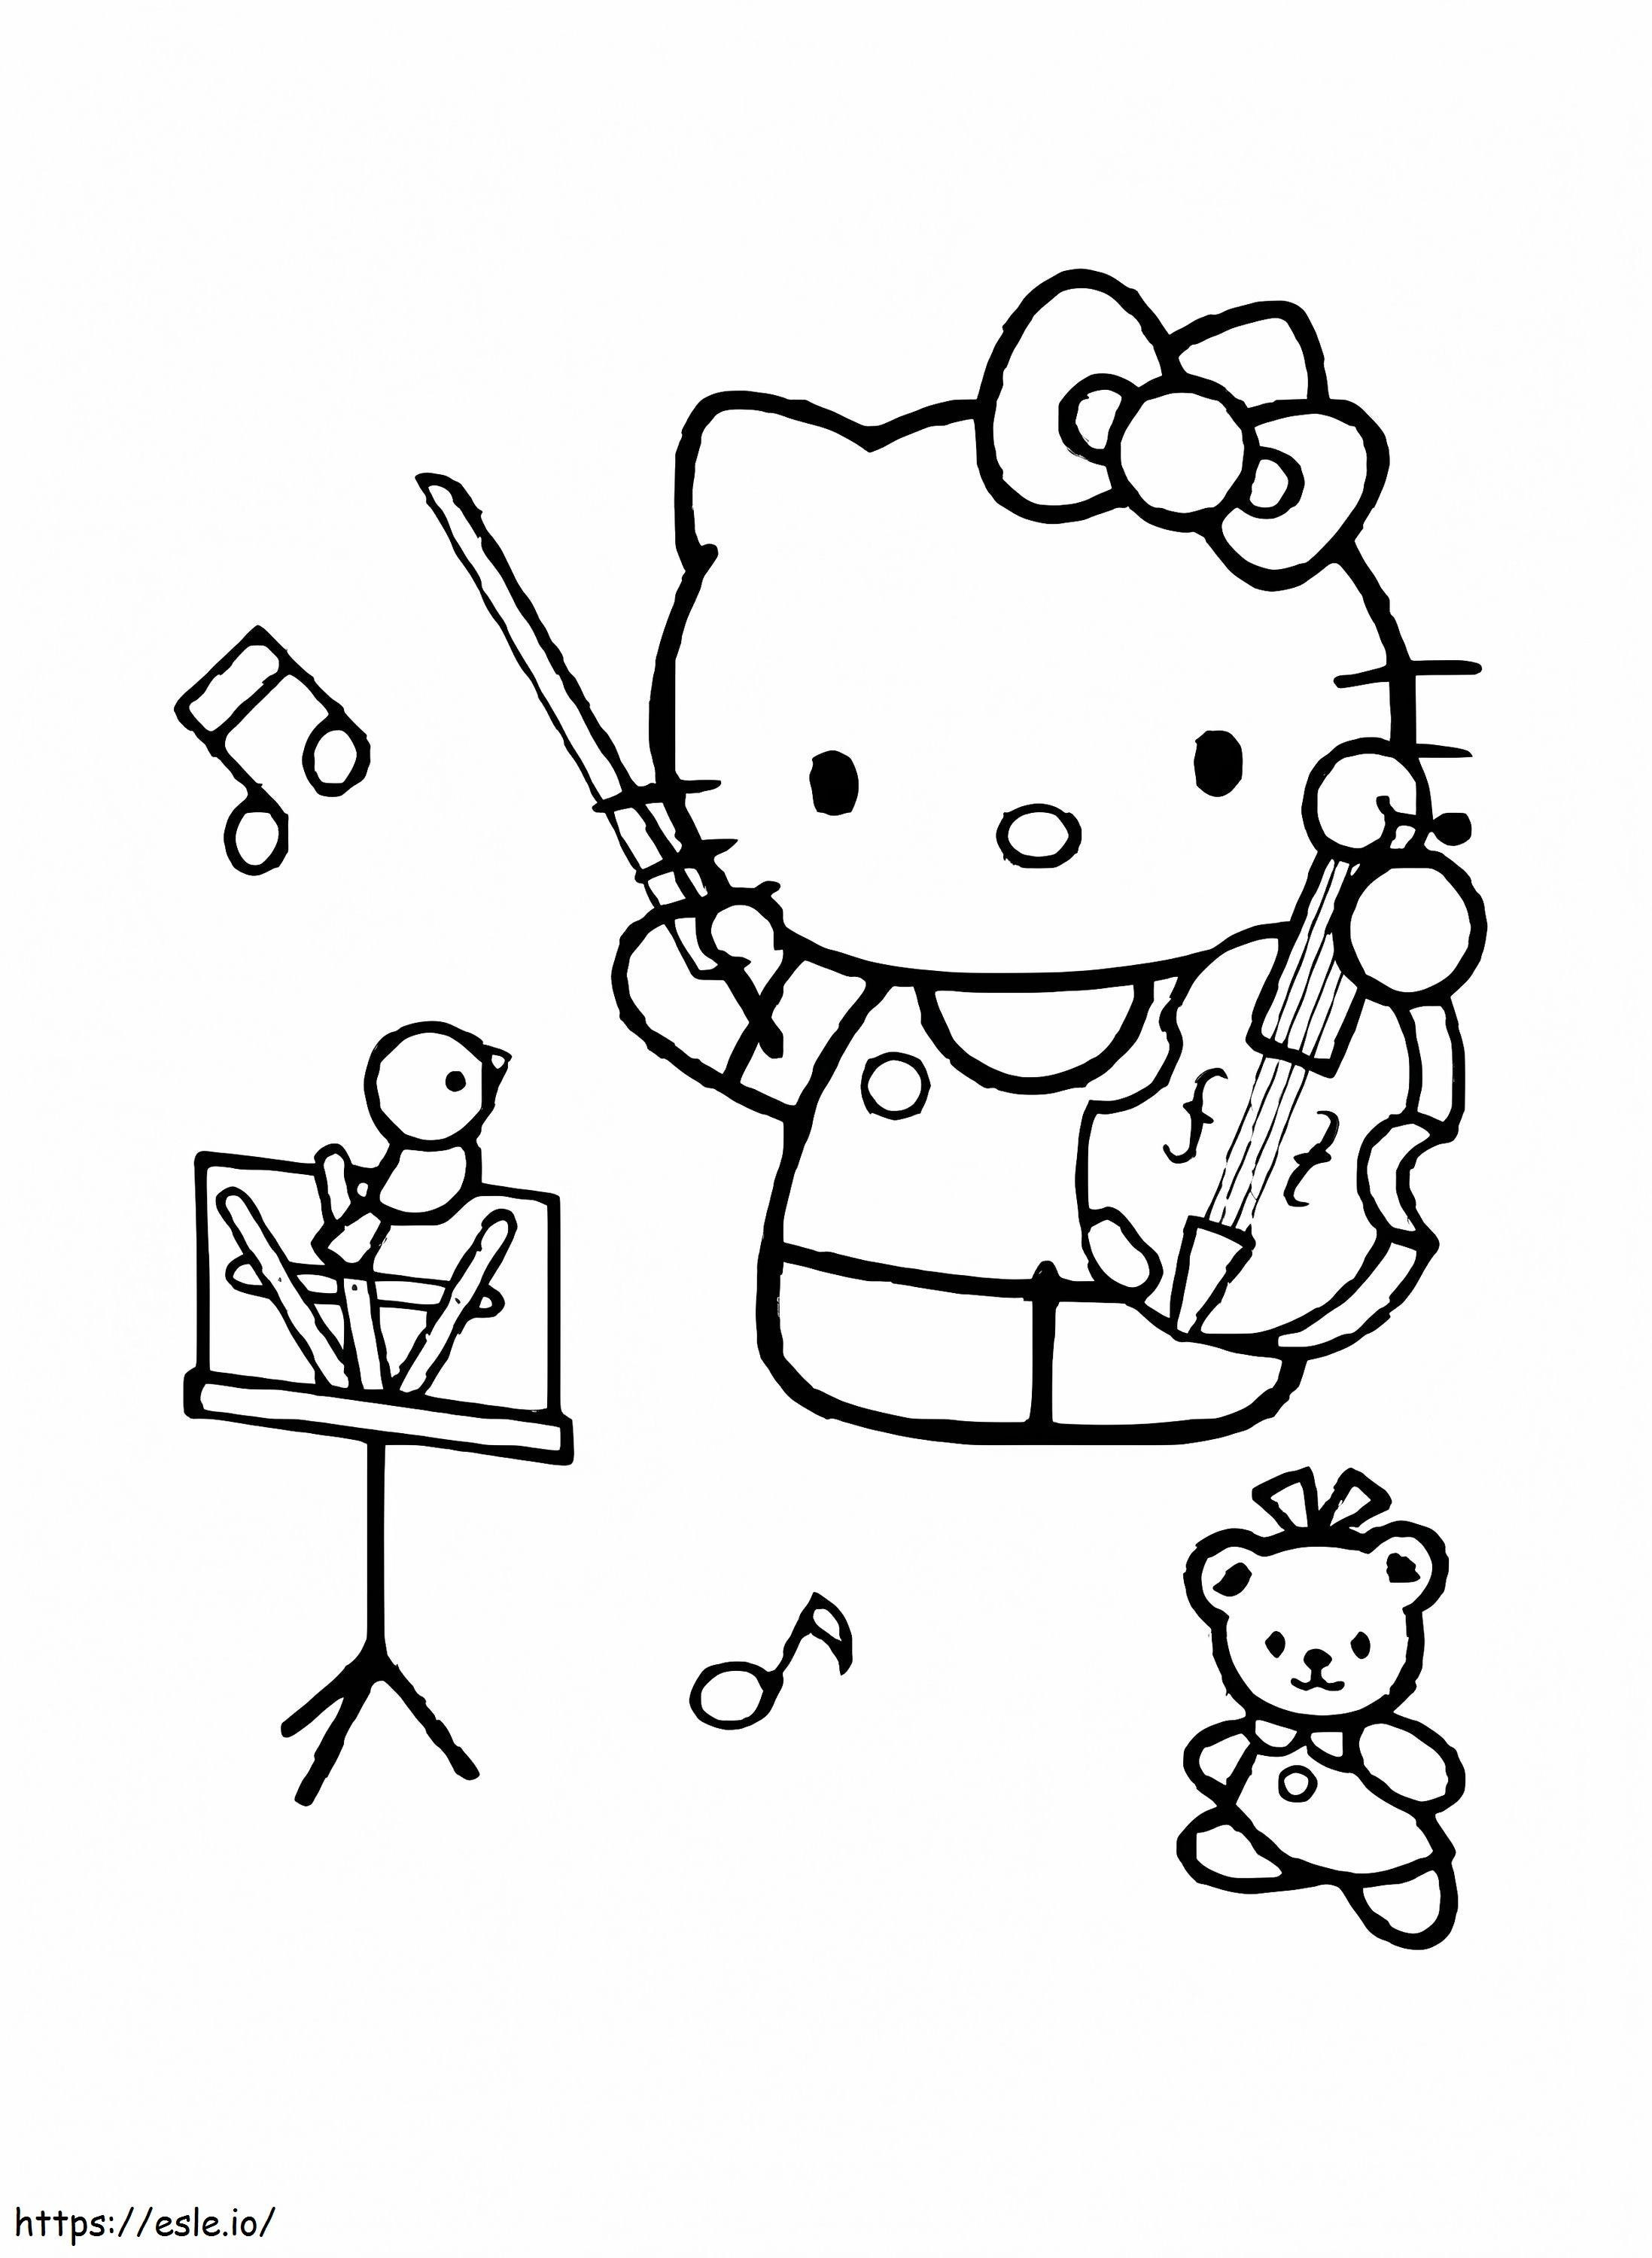 Hallo Kitty spielt Geige ausmalbilder